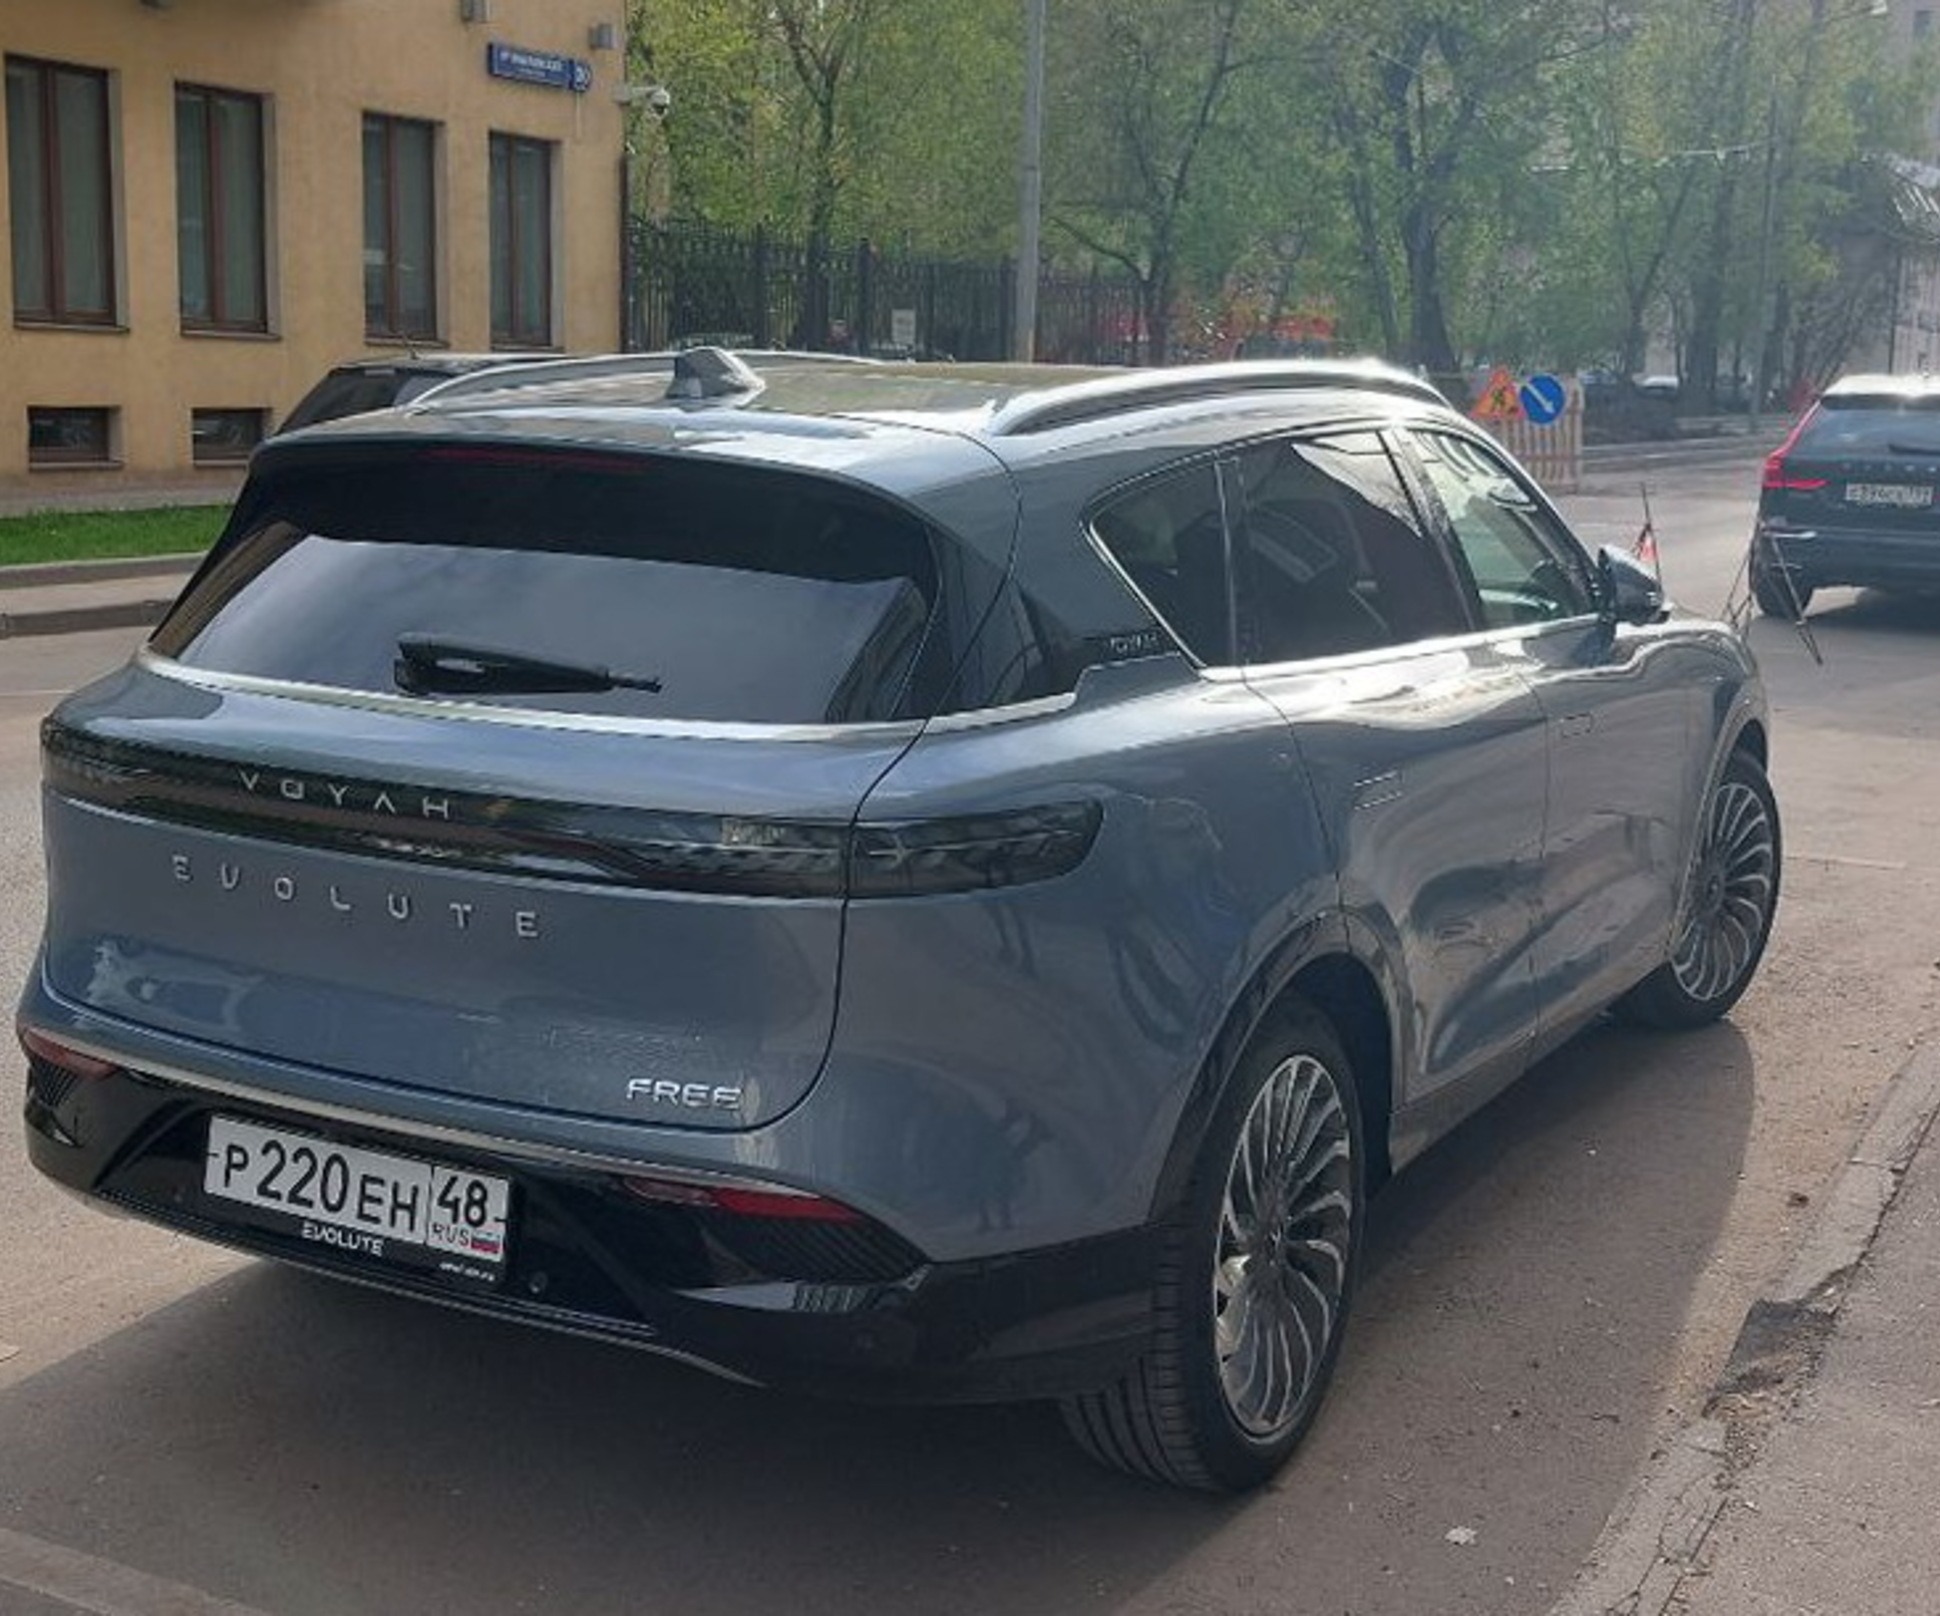 Первые российские электромобили Evolute начнут серийно выпускать в Липецке уже в третьем квартале 2022 года